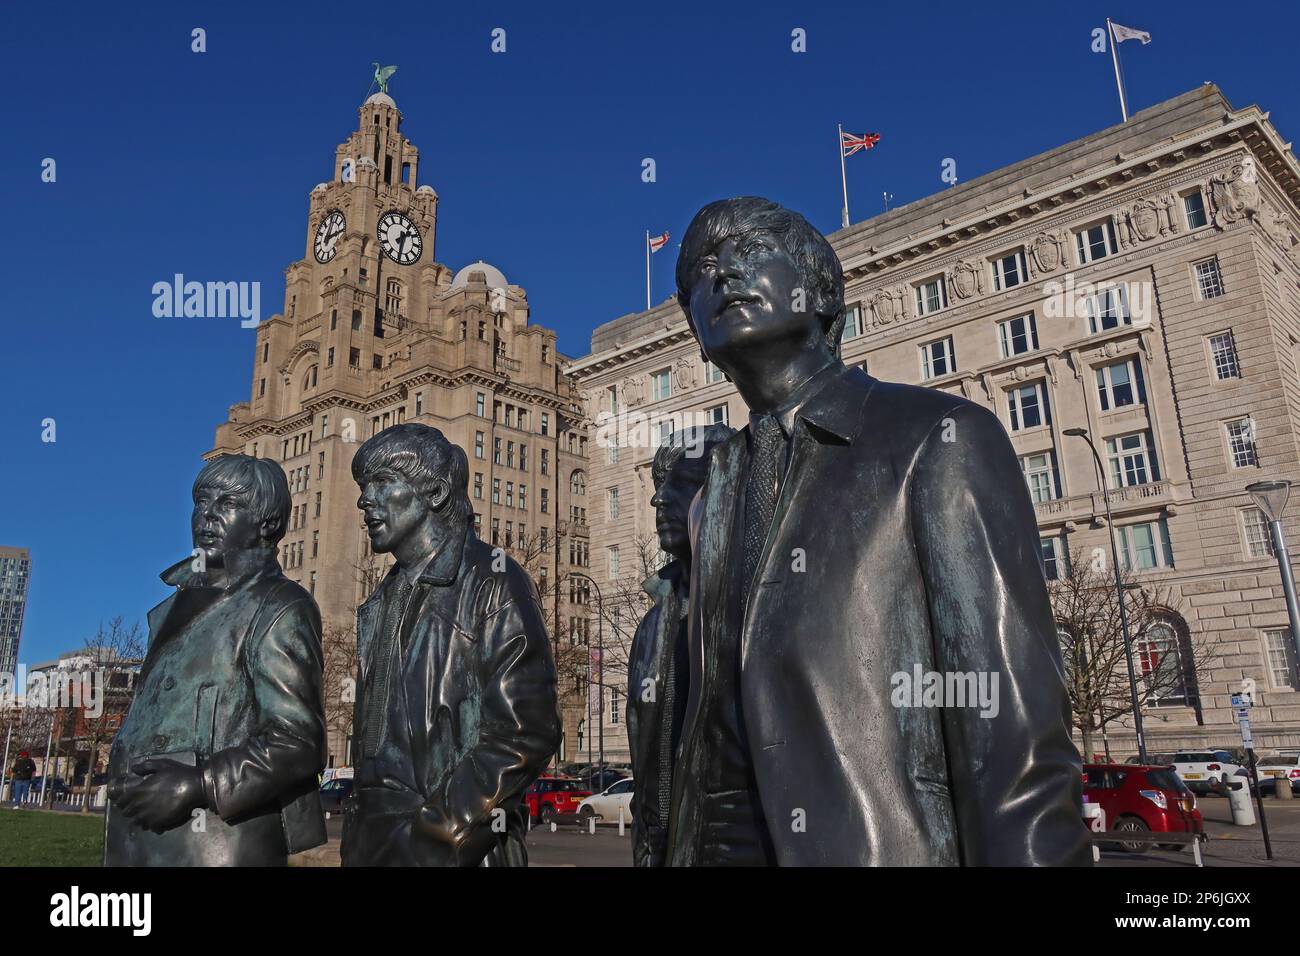 La statue en bronze des Beatles de 2015 par Andy Edwards, au Pier Head, centre-ville de Liverpool, Merseyside, Angleterre, Royaume-Uni, L3 1HN Banque D'Images